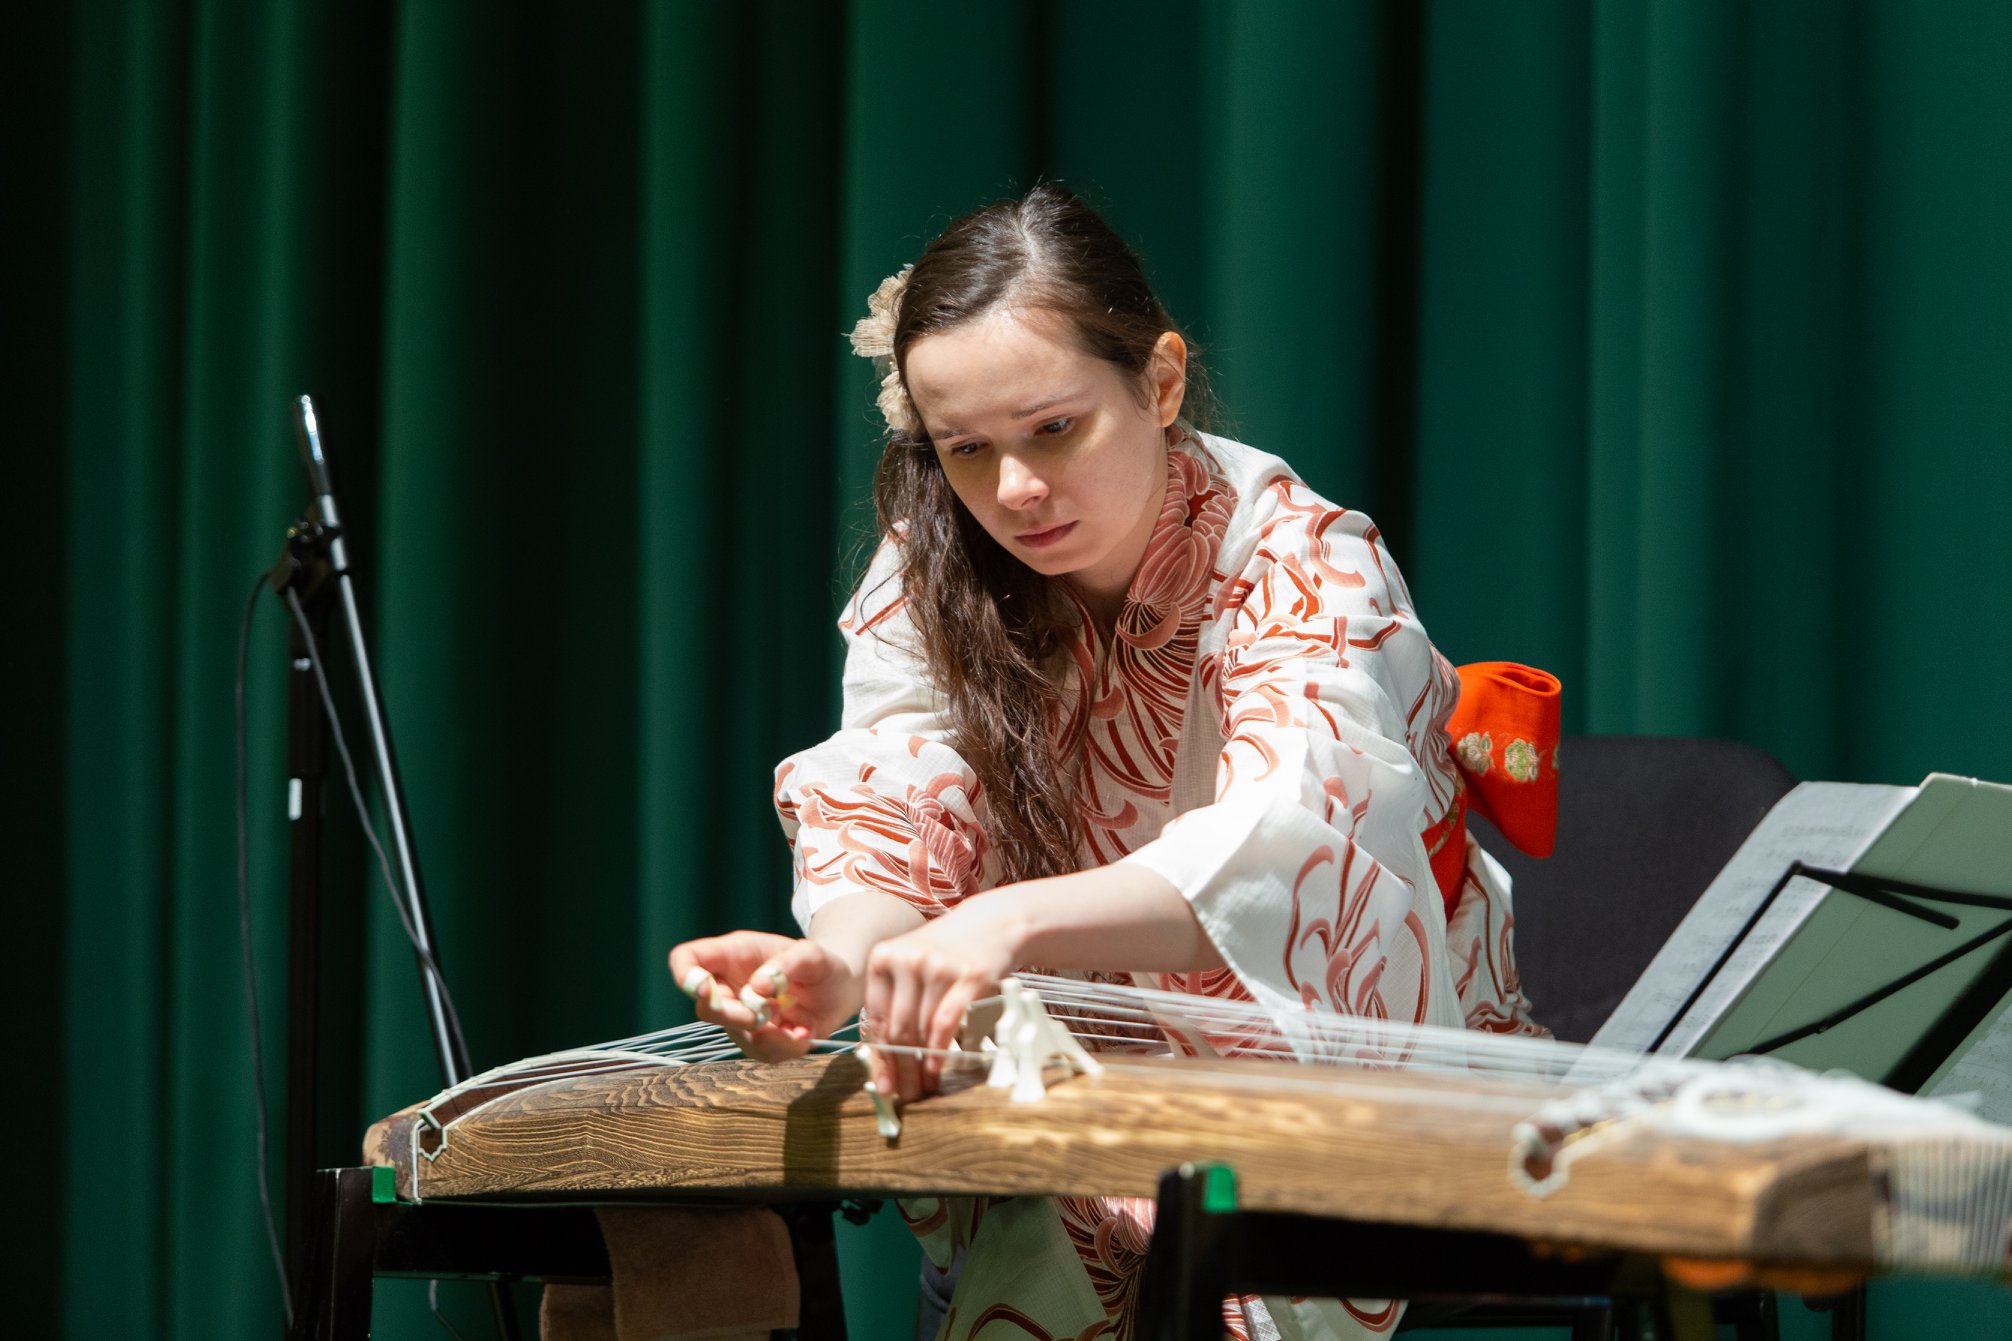 Muzyczka w japońskim stroju grająca na kobo